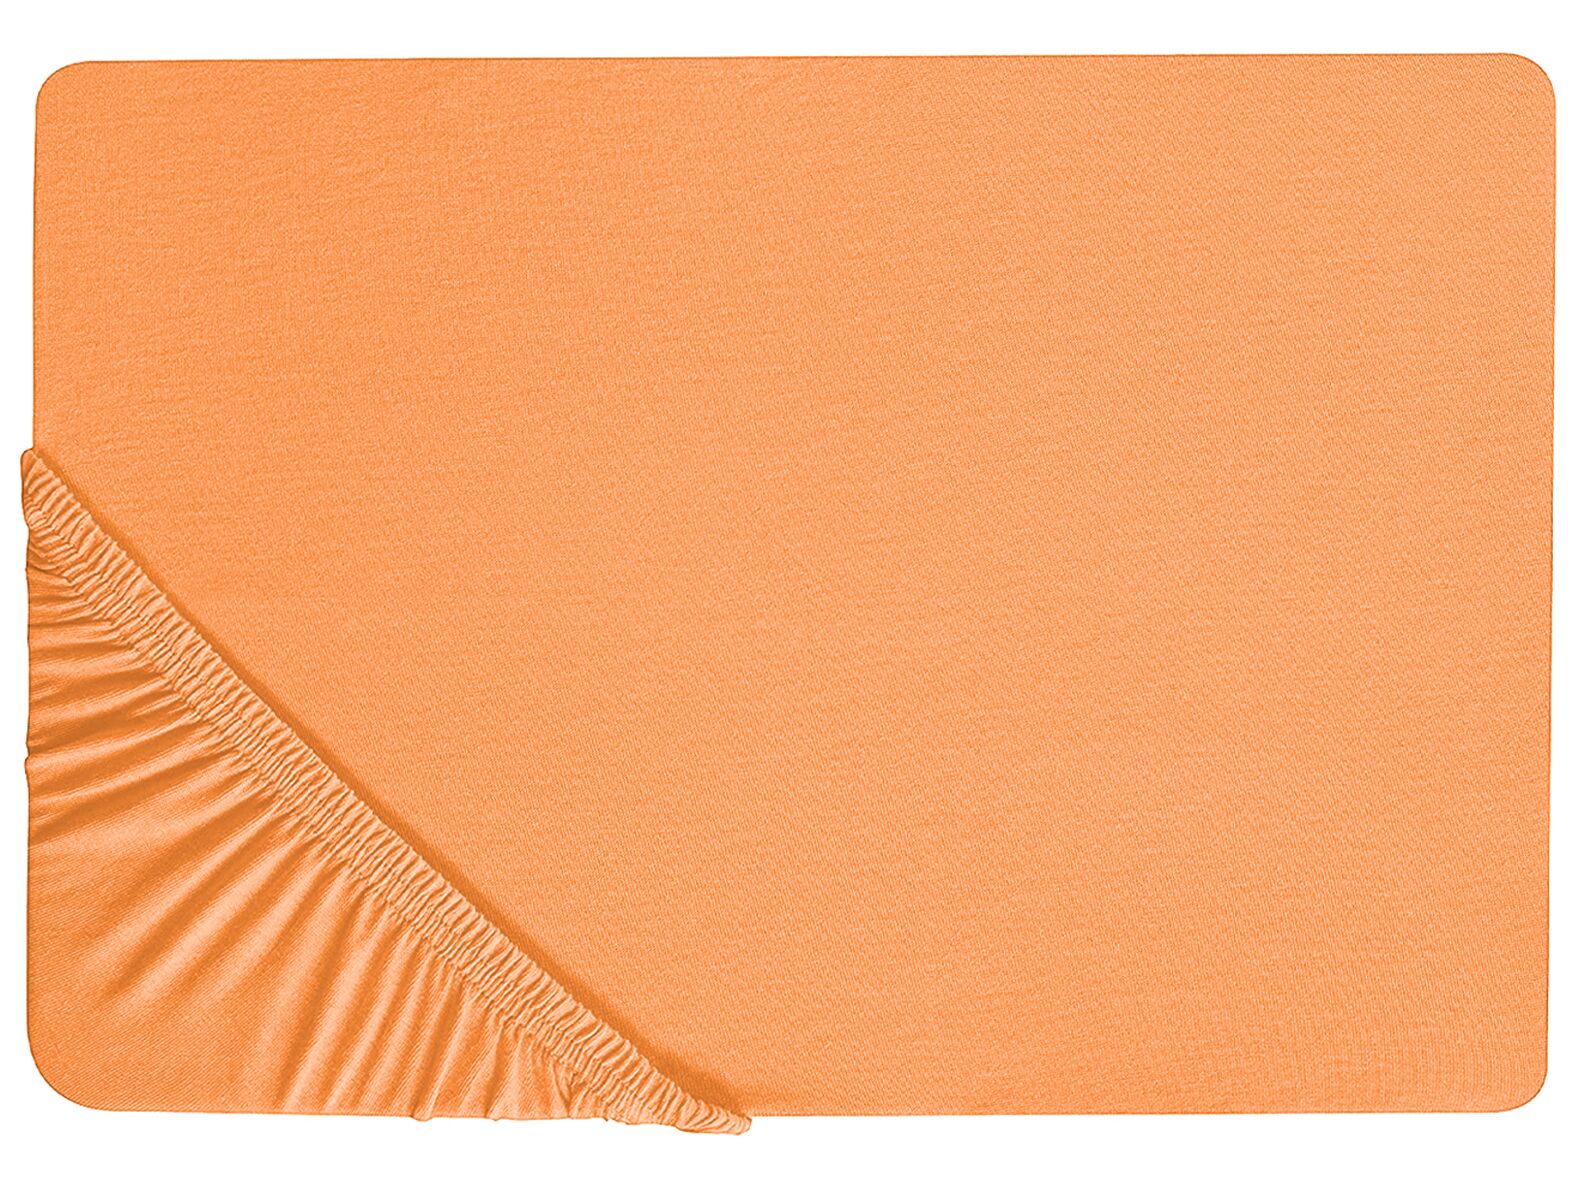 Stræklagen 90 x 200 cm orange bomuld JANBU_845916